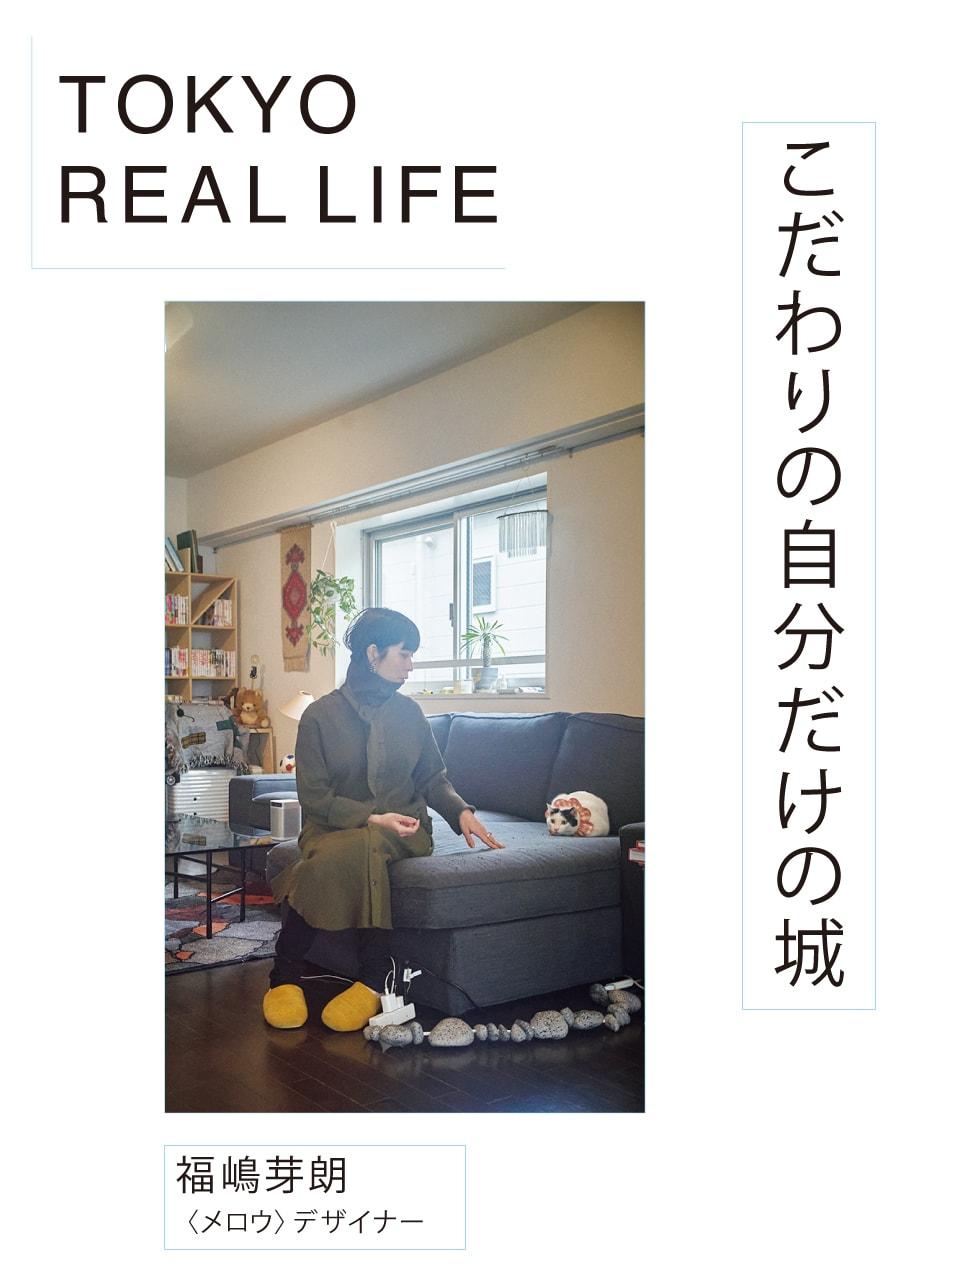 「クリーン、広々を保つのは2匹の 猫と仲良く暮らすための秘訣」【 TOKYO REAL LIFE vol.6 福嶋芽朗さん】